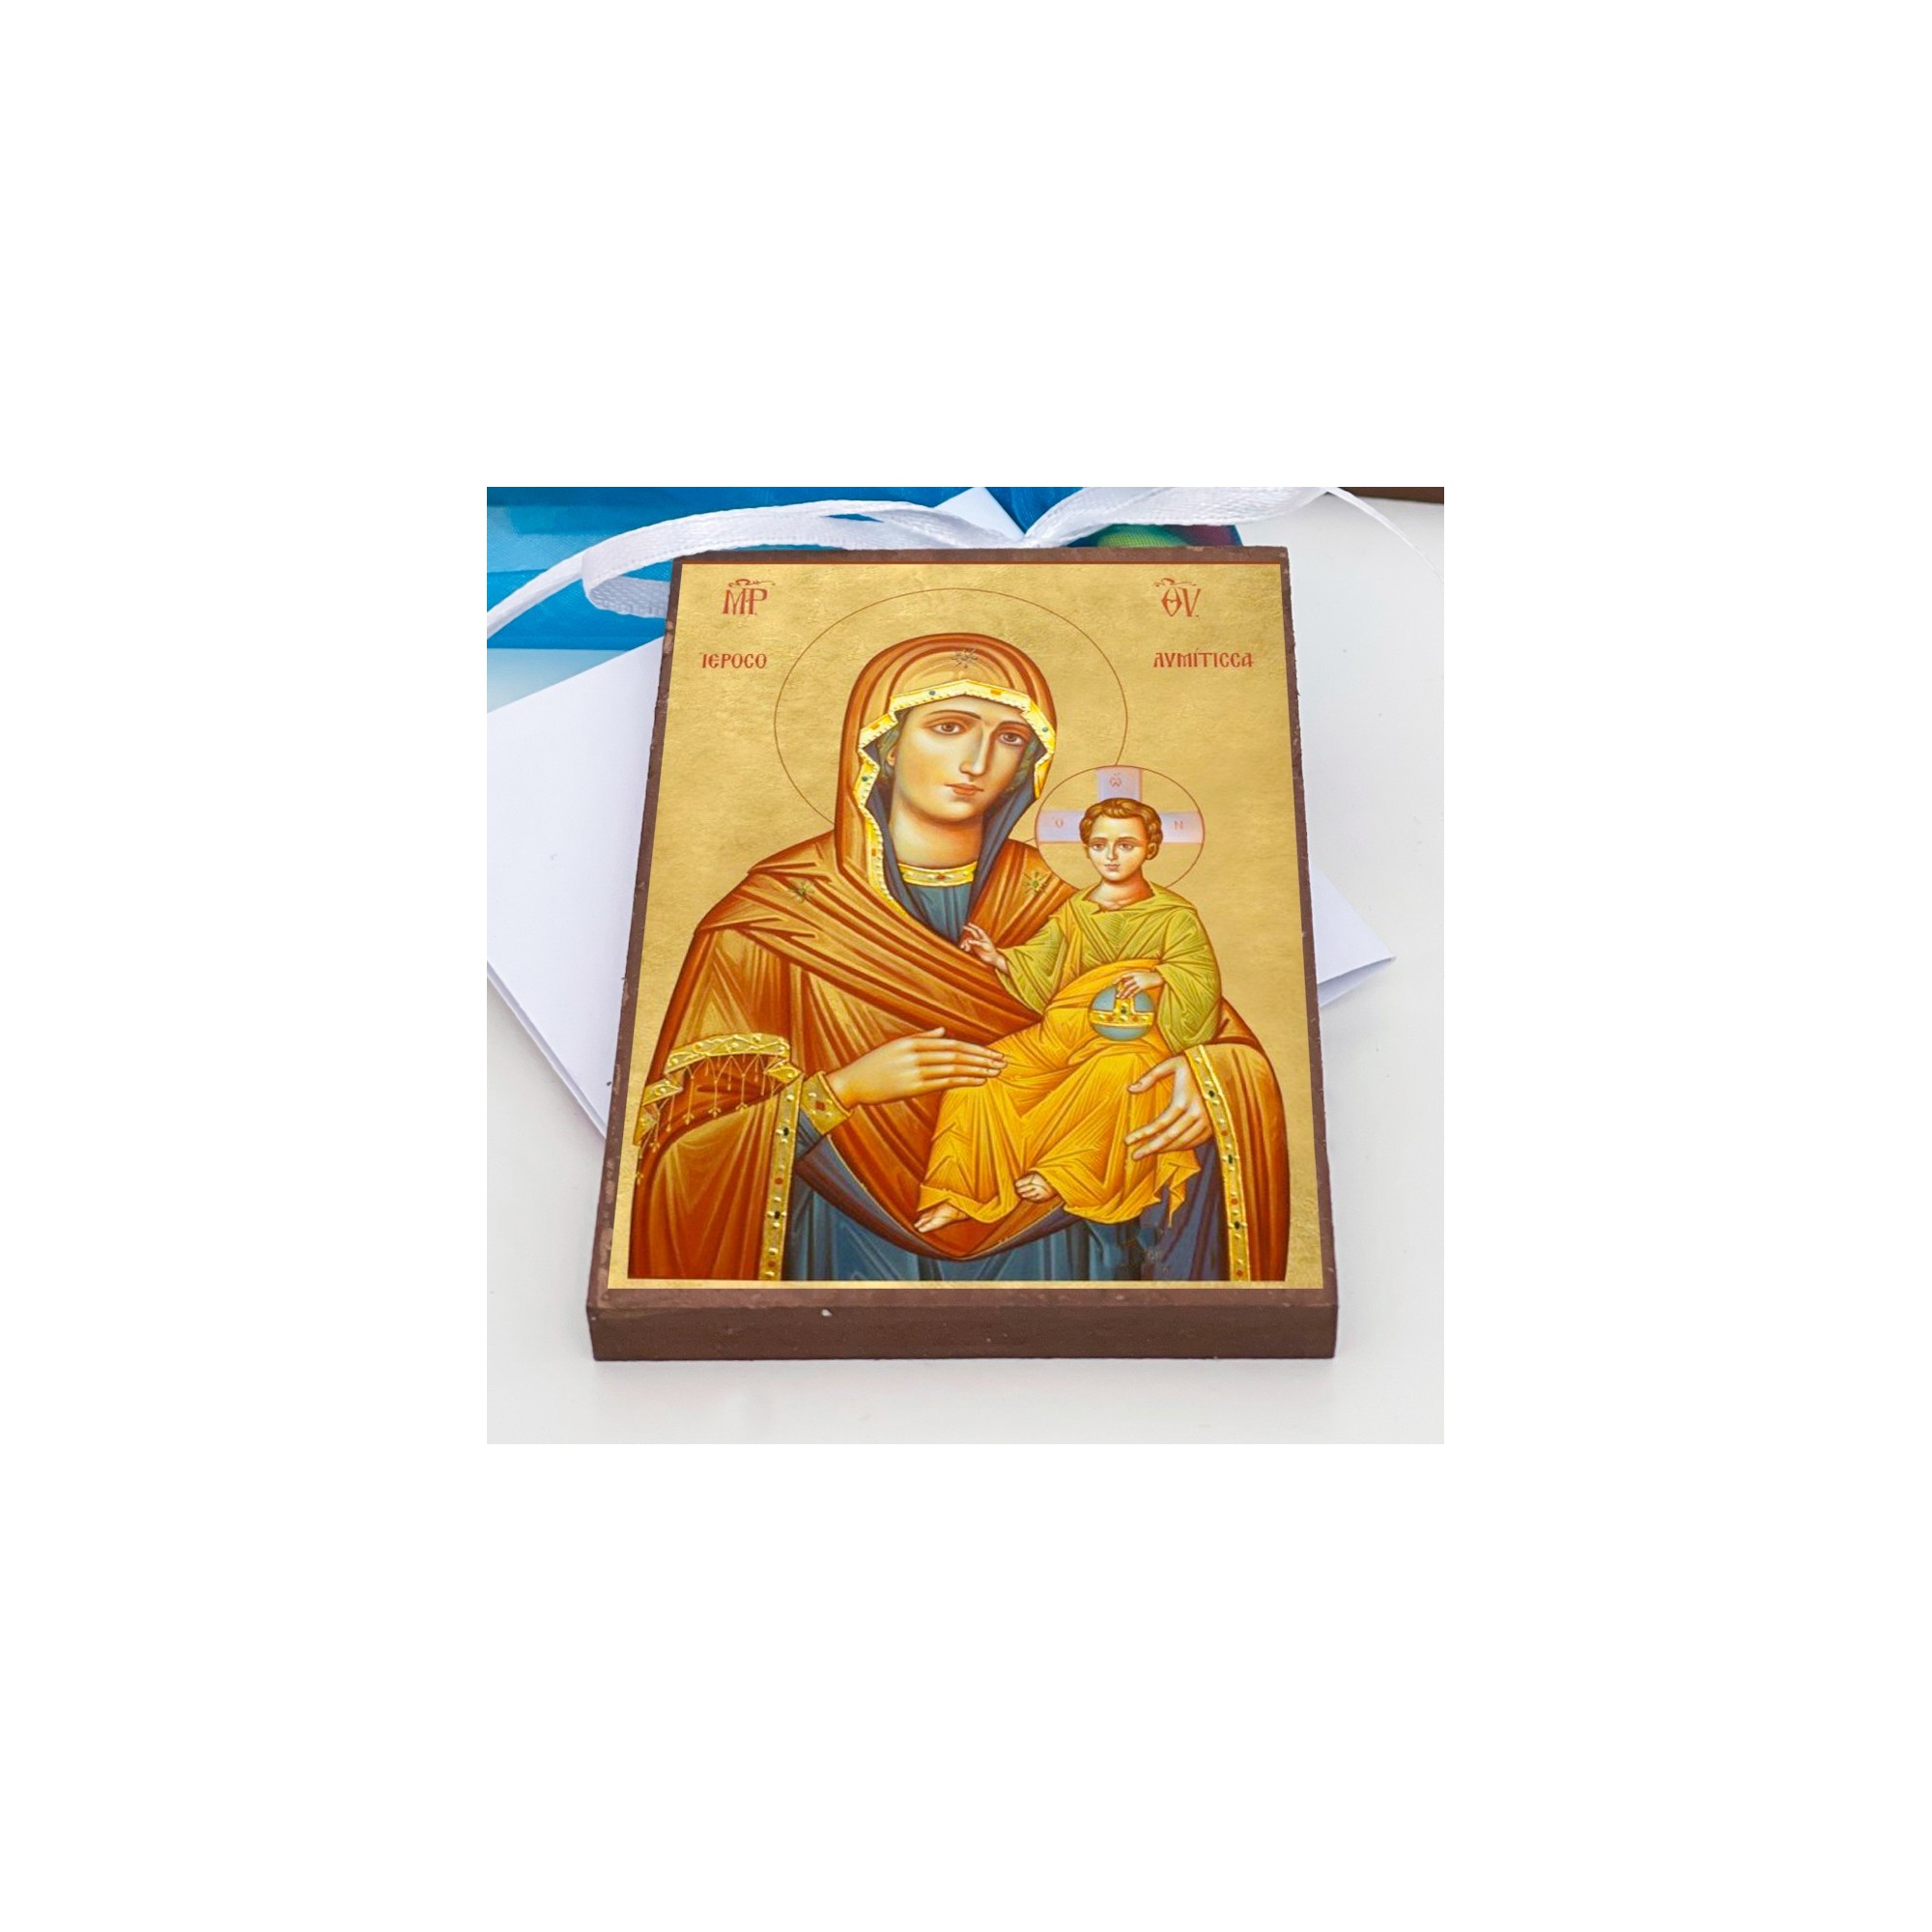 Μπομπονιέρα Βάπτισης εικόνα Αγίου - LWG-12283